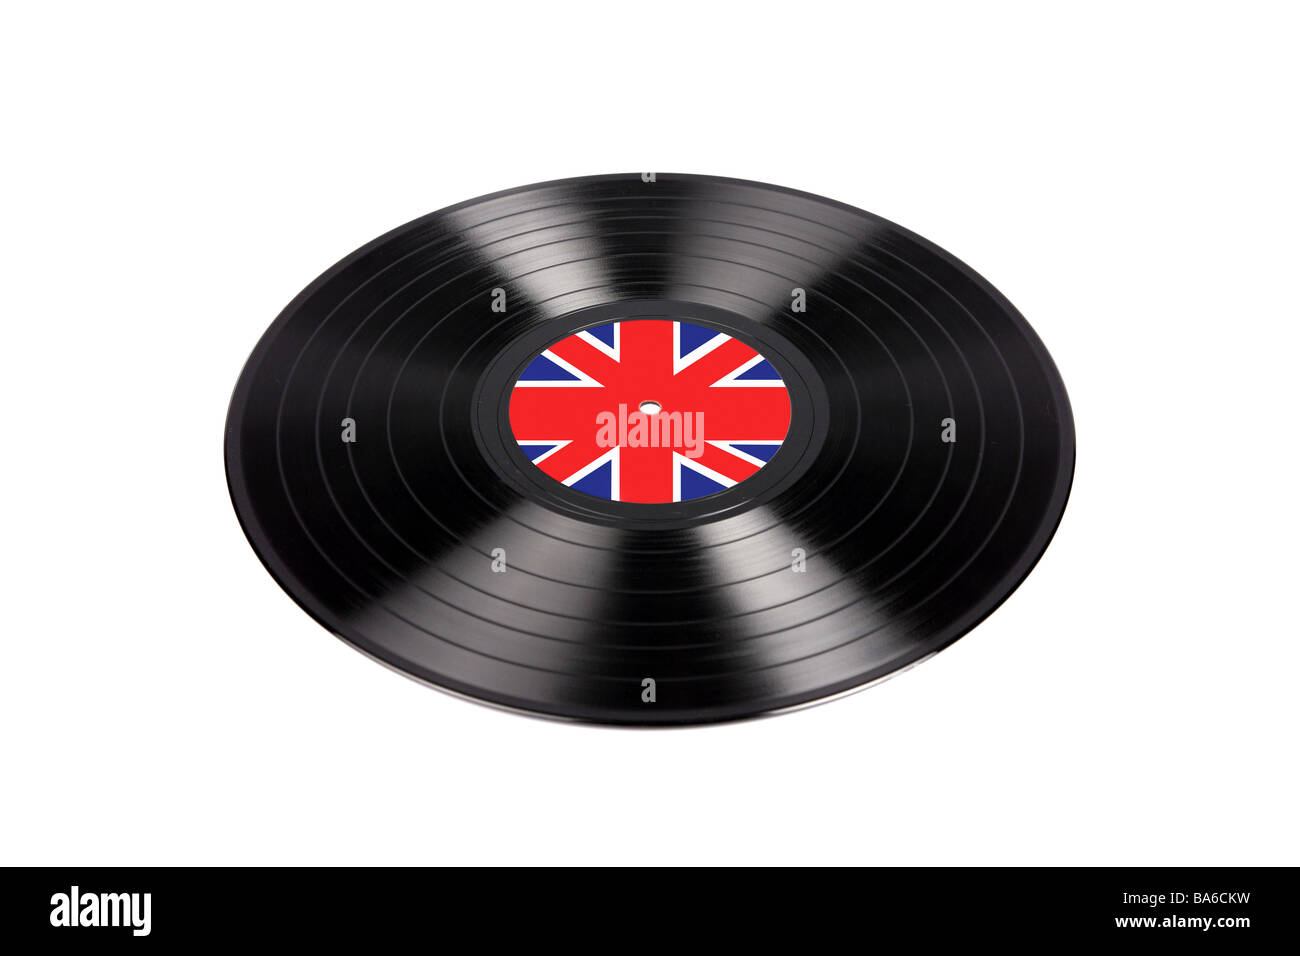 1960er lp vinly Aufnahme mit einer britischen Union Jack Aufkleber in der Regel mit den Mods oder später Punk Rock Musik assoziiert Stockfoto